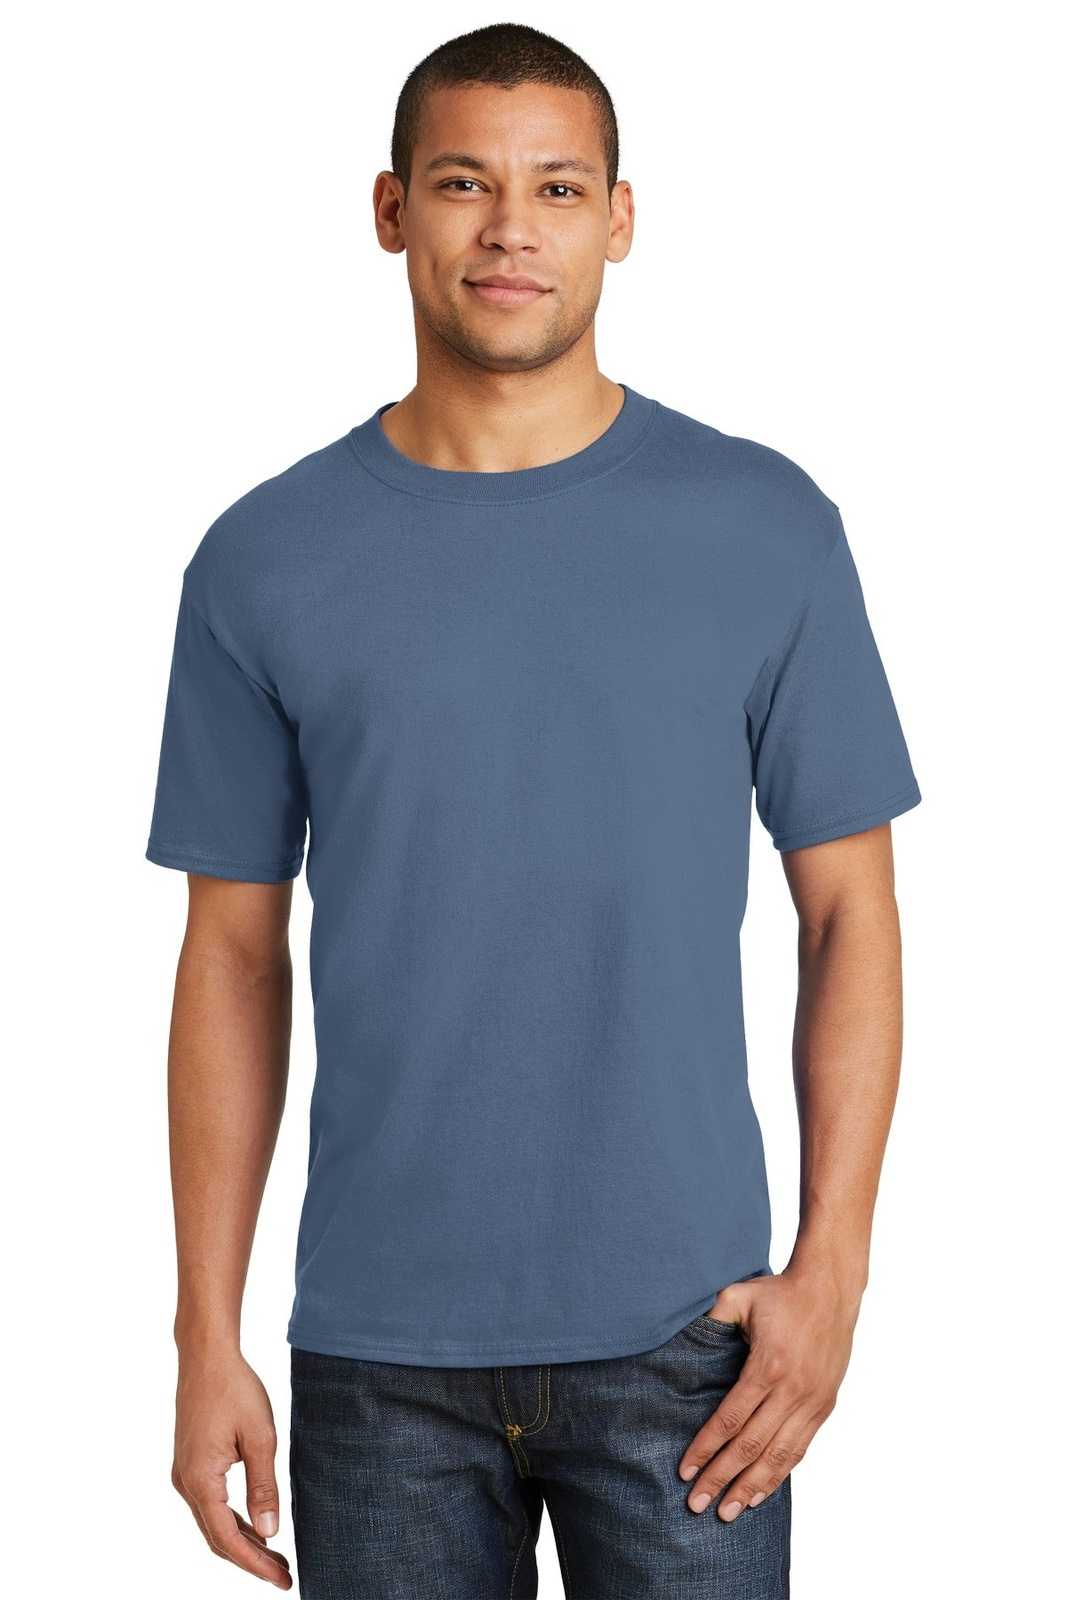 Hanes 5180 Beefy-T 100% Cotton T-Shirt - Denim Blue - HIT a Double